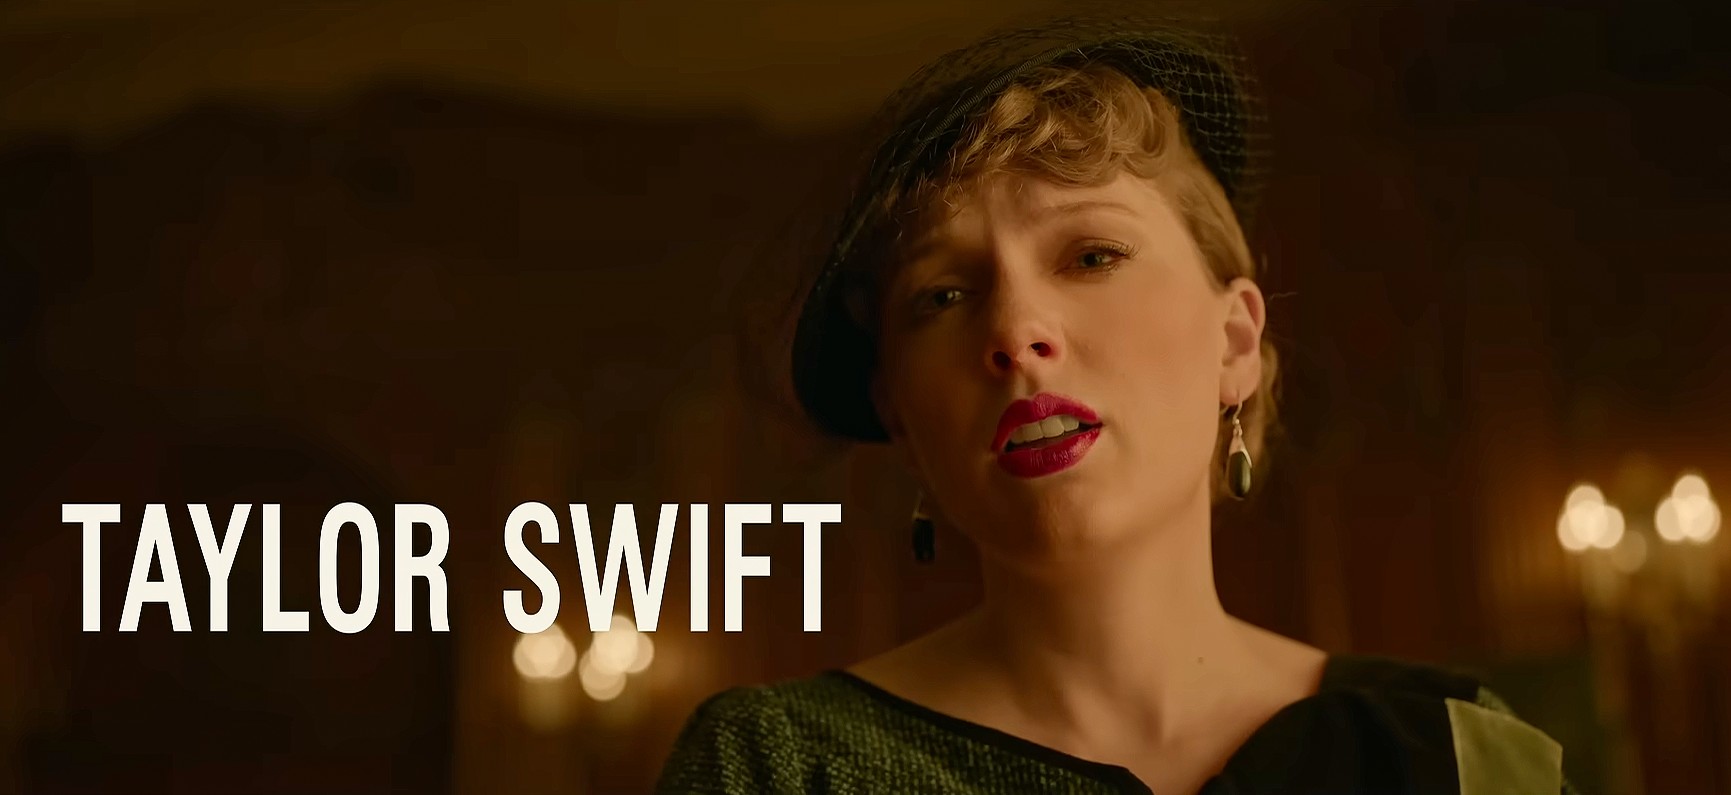 Taylor Swift góp mặt với vai diễn chưa được hé lộ